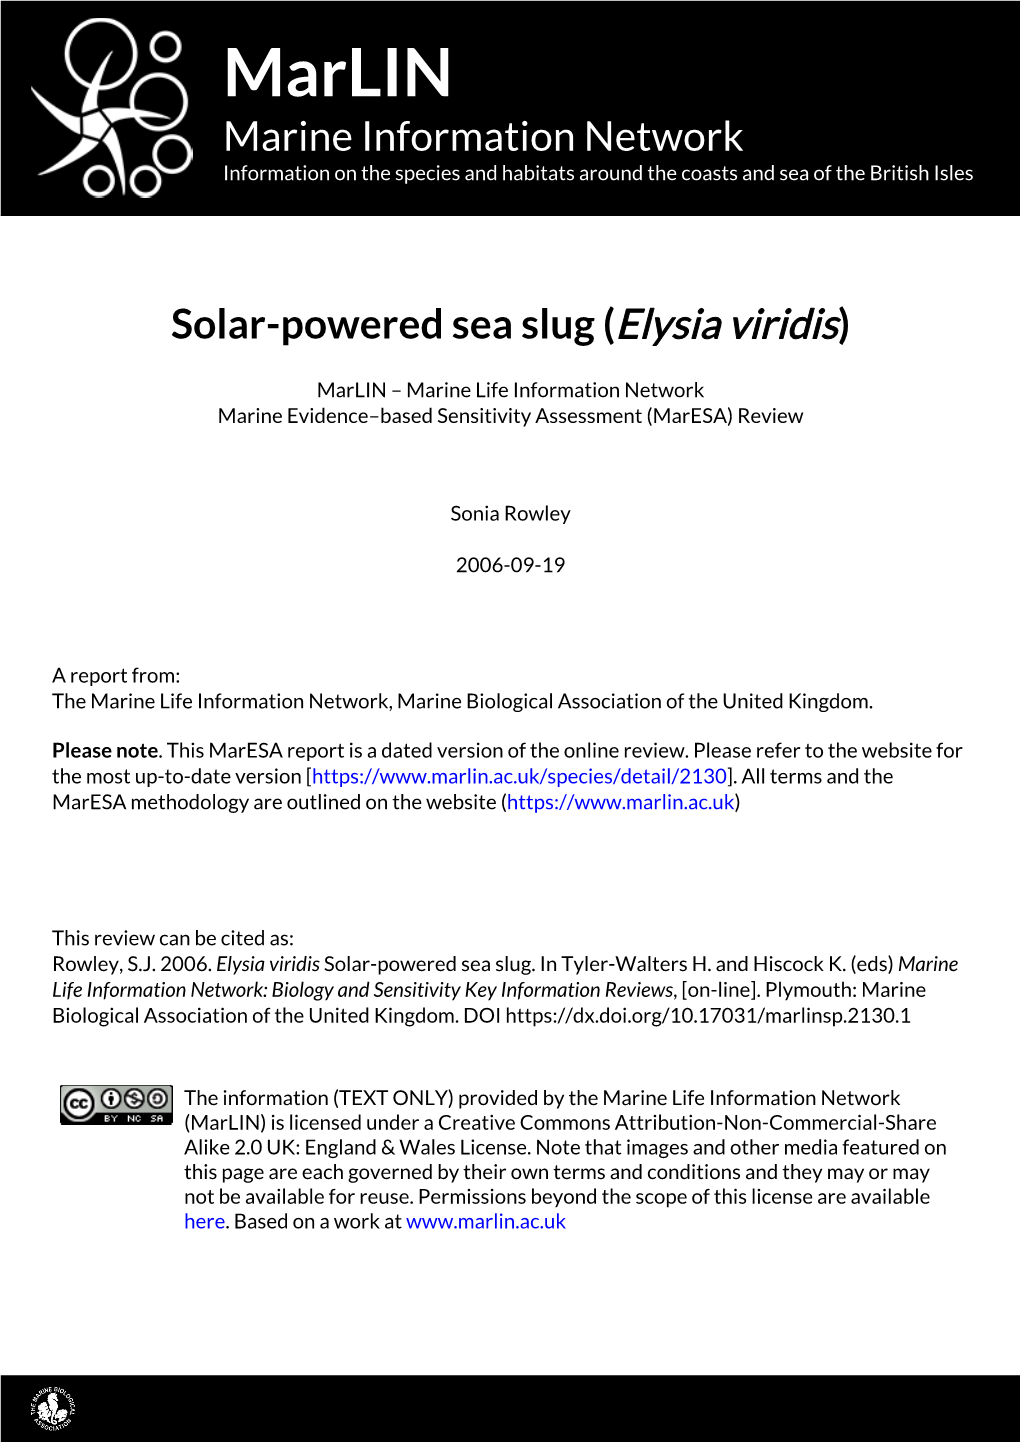 Solar-Powered Sea Slug (Elysia Viridis)